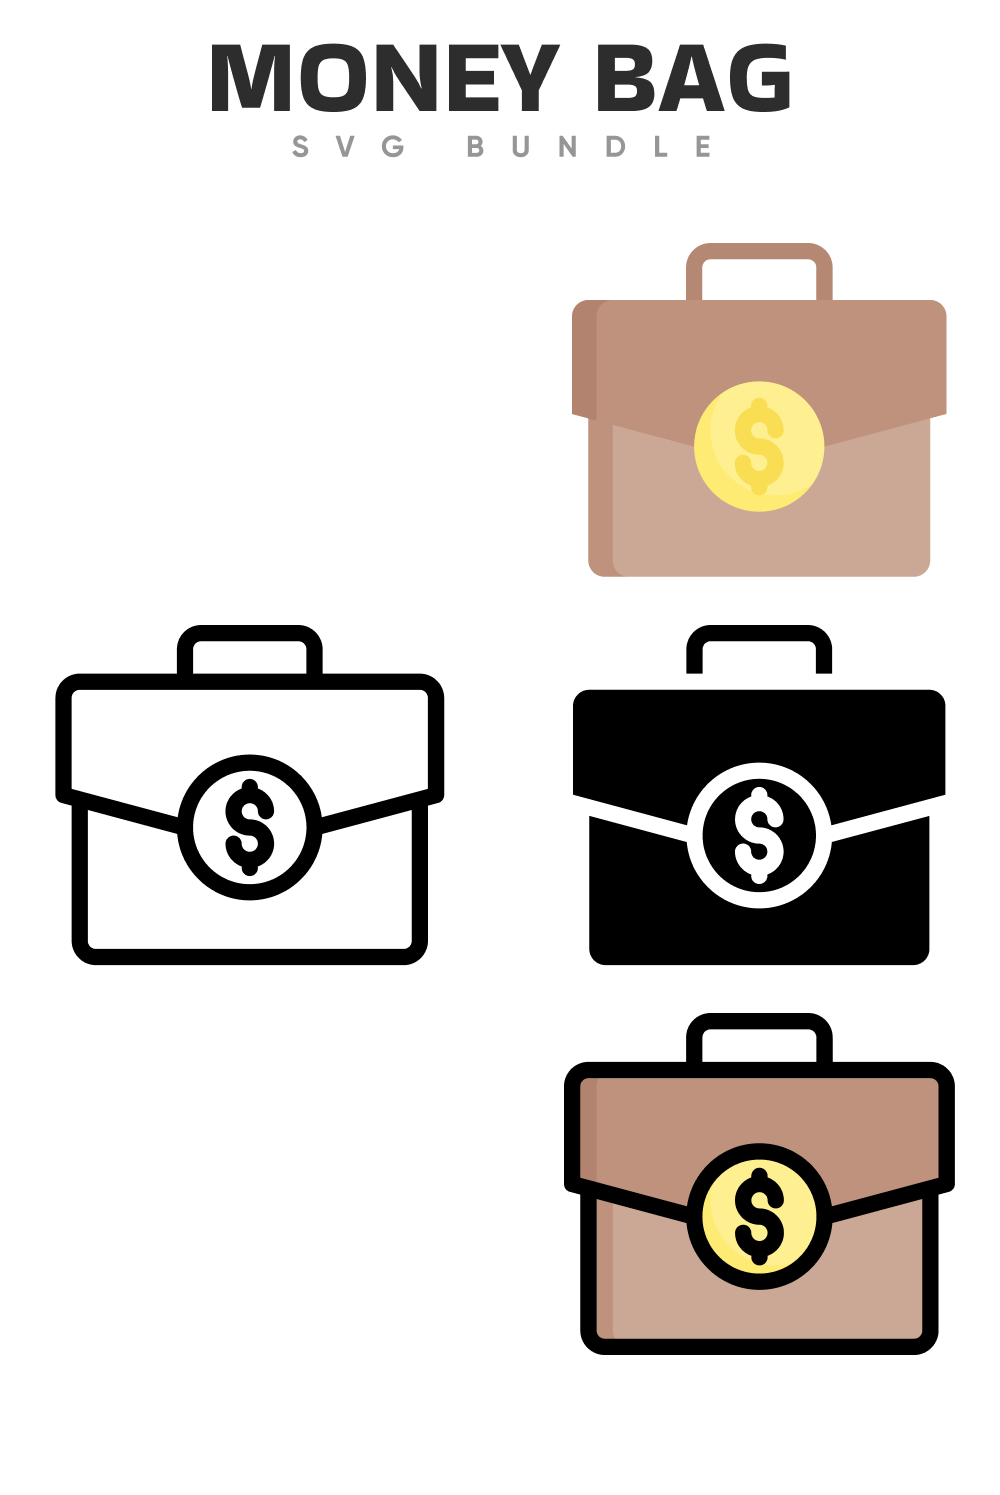 Money Bag Vector SVG Icon (66) - SVG Repo